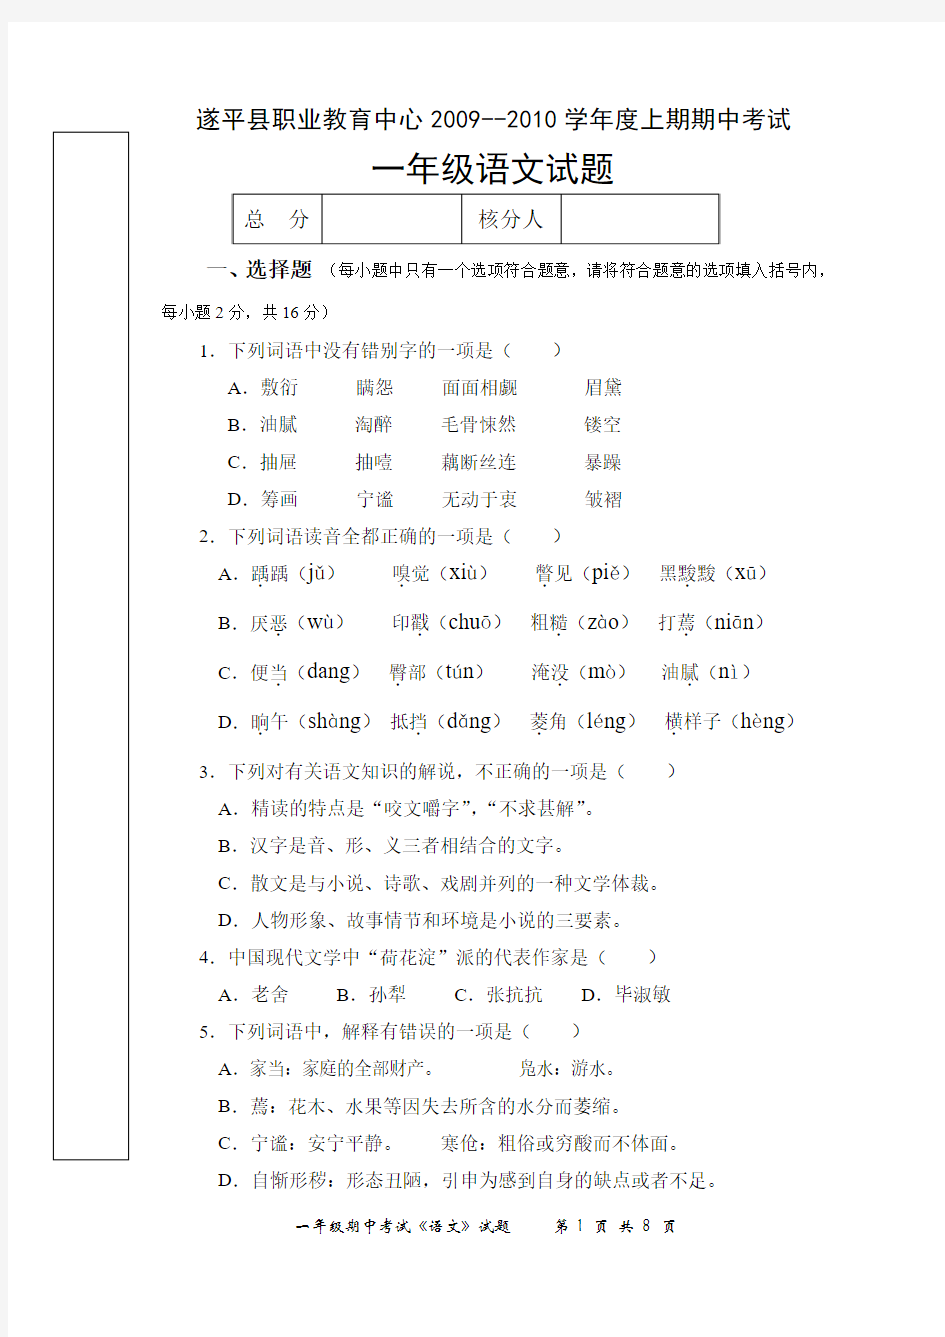 遂平县职业教育中心2009—2010学年度上期期中考试一年级语文试卷